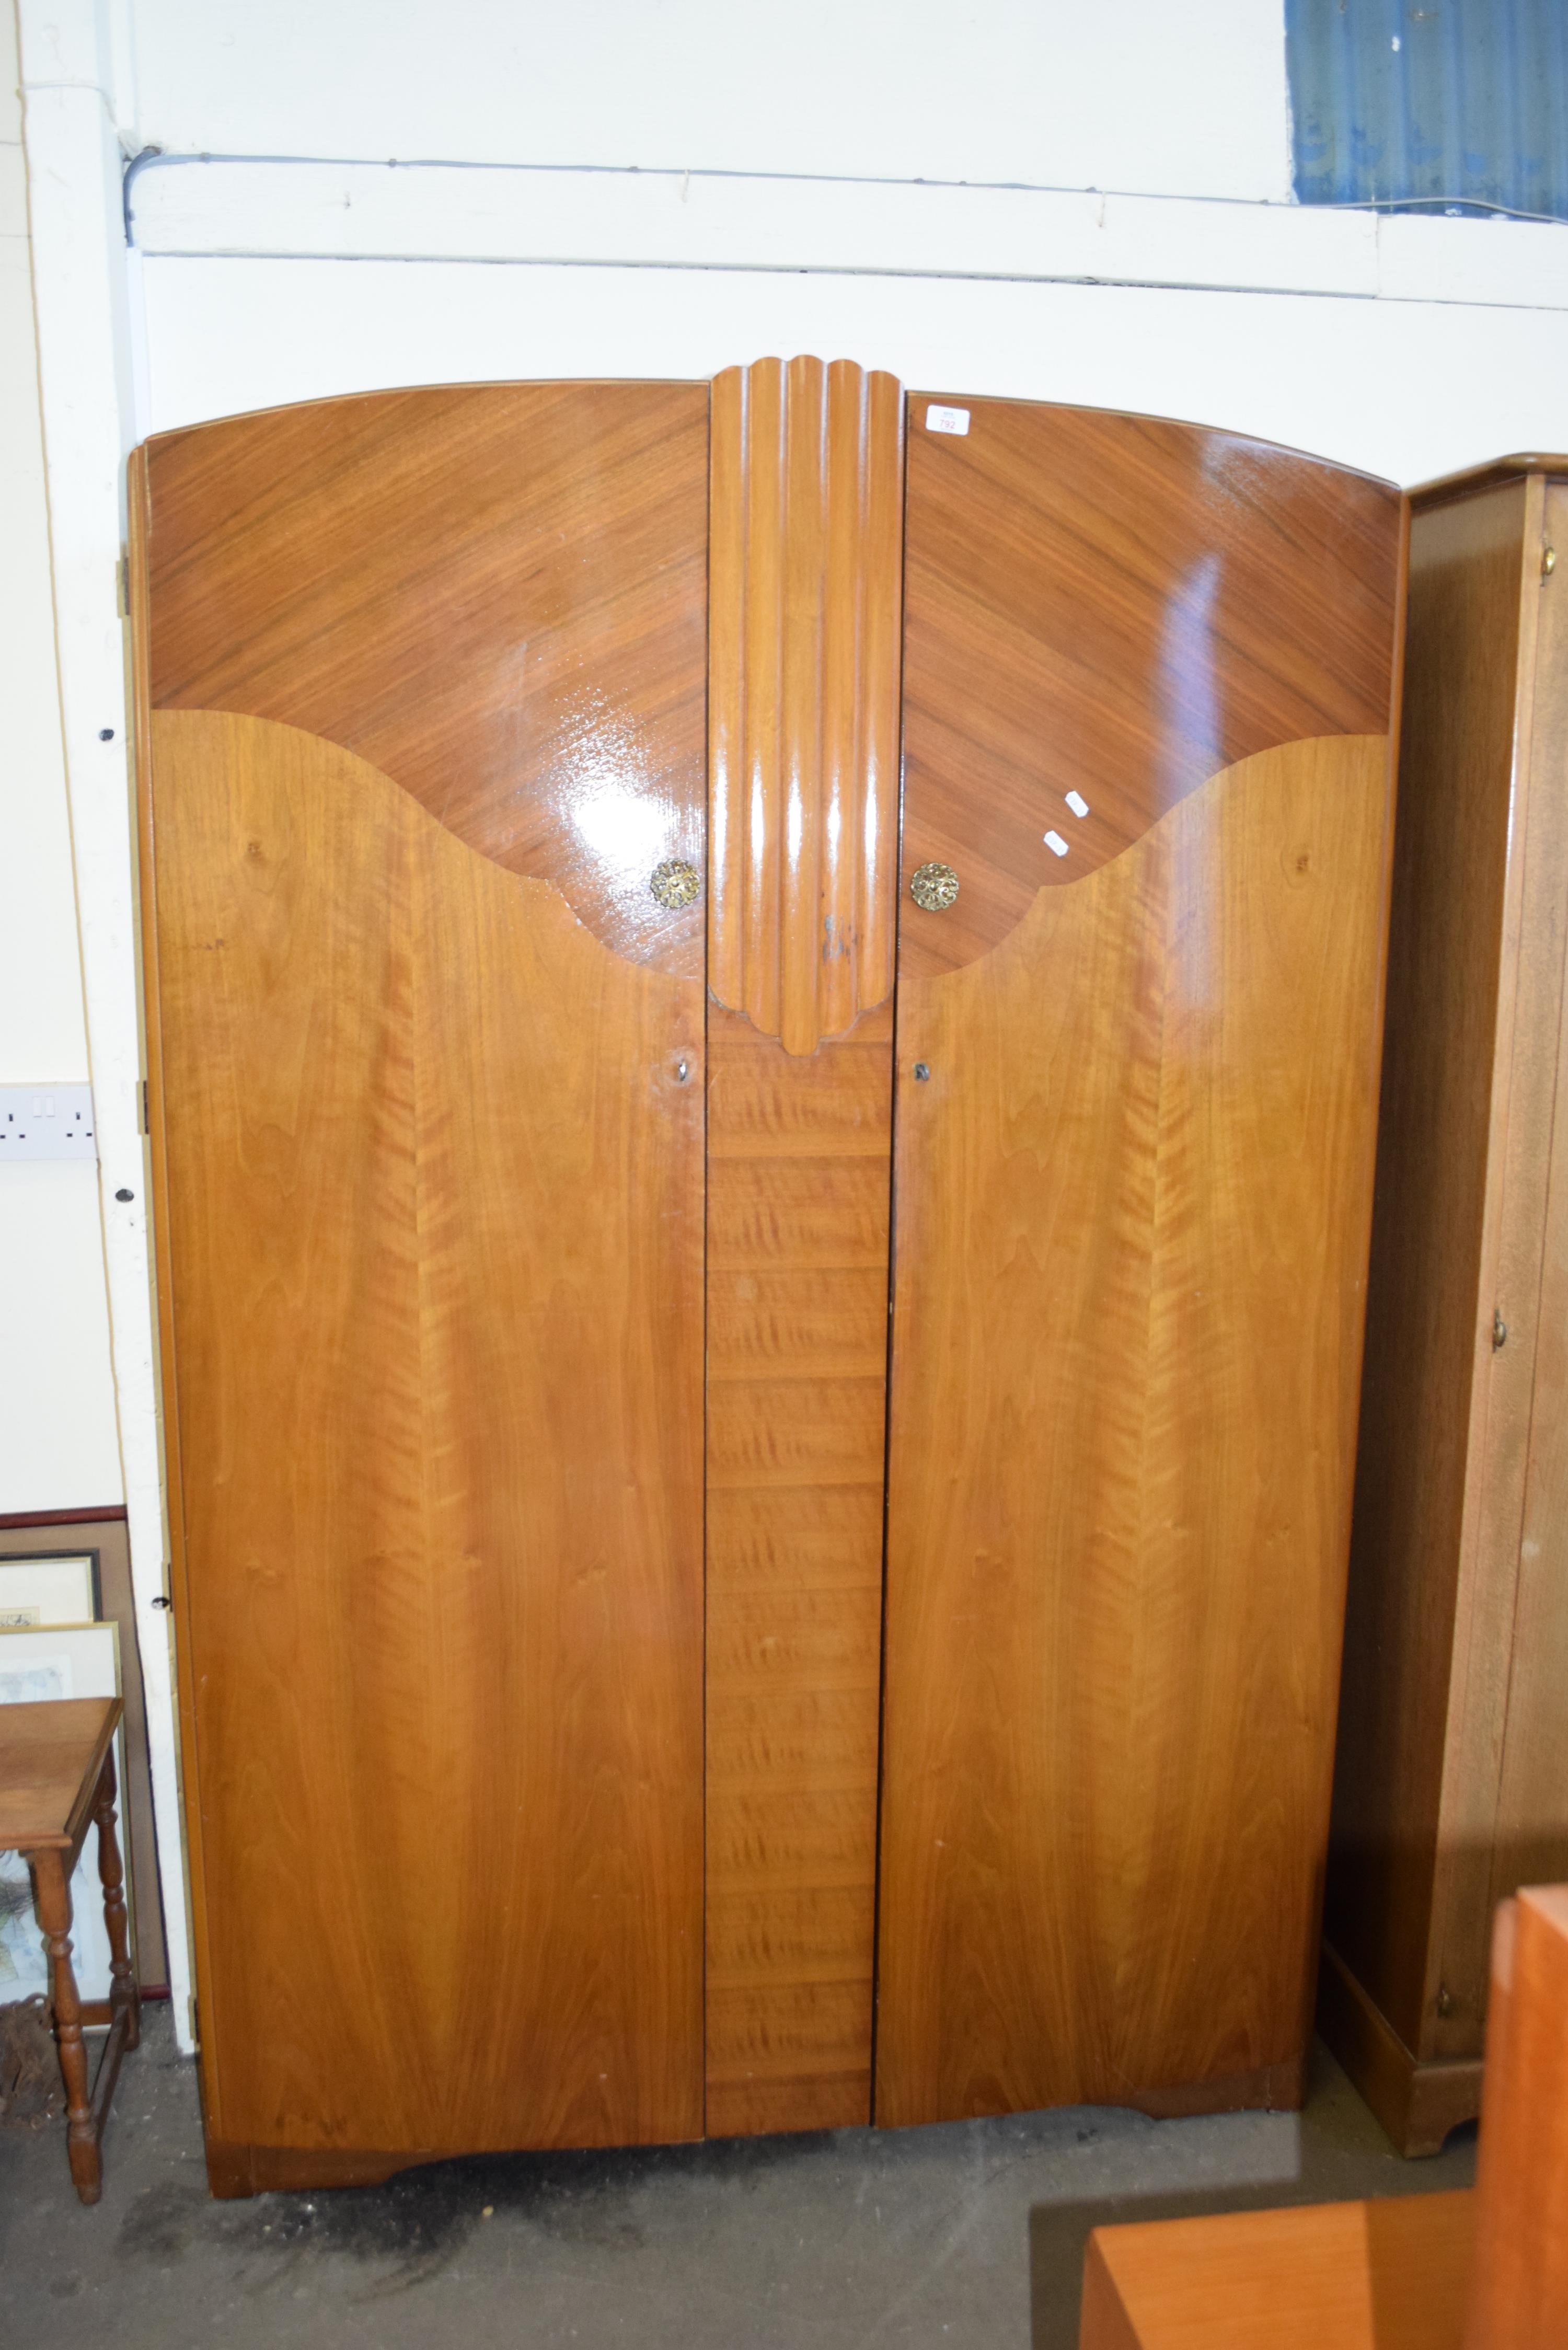 MID-20TH CENTURY DOUBLE DOOR WALNUT VENEERED WARDROBE, 188CM HIGH